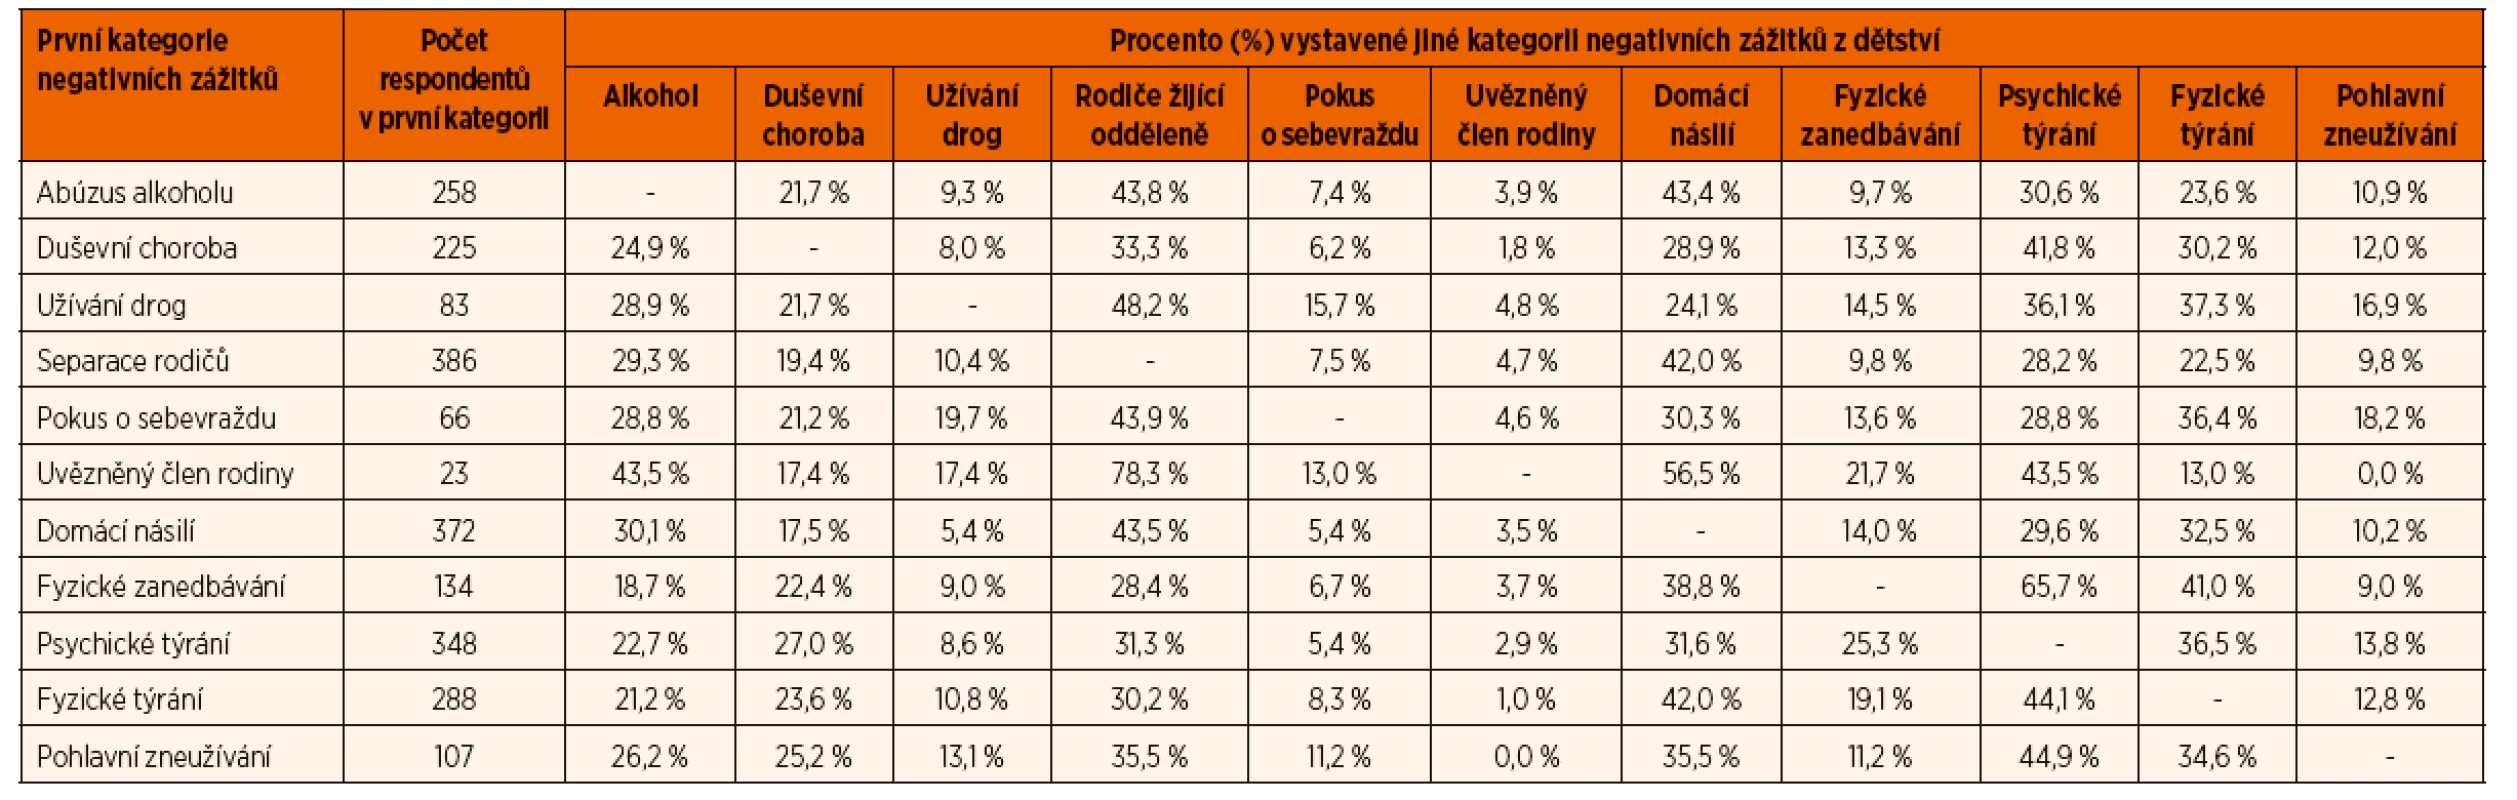 Vzájemný vztah mezi kategoriemi vystavení negativním zážitkům z dětství, Česká republika, 2013 [55].